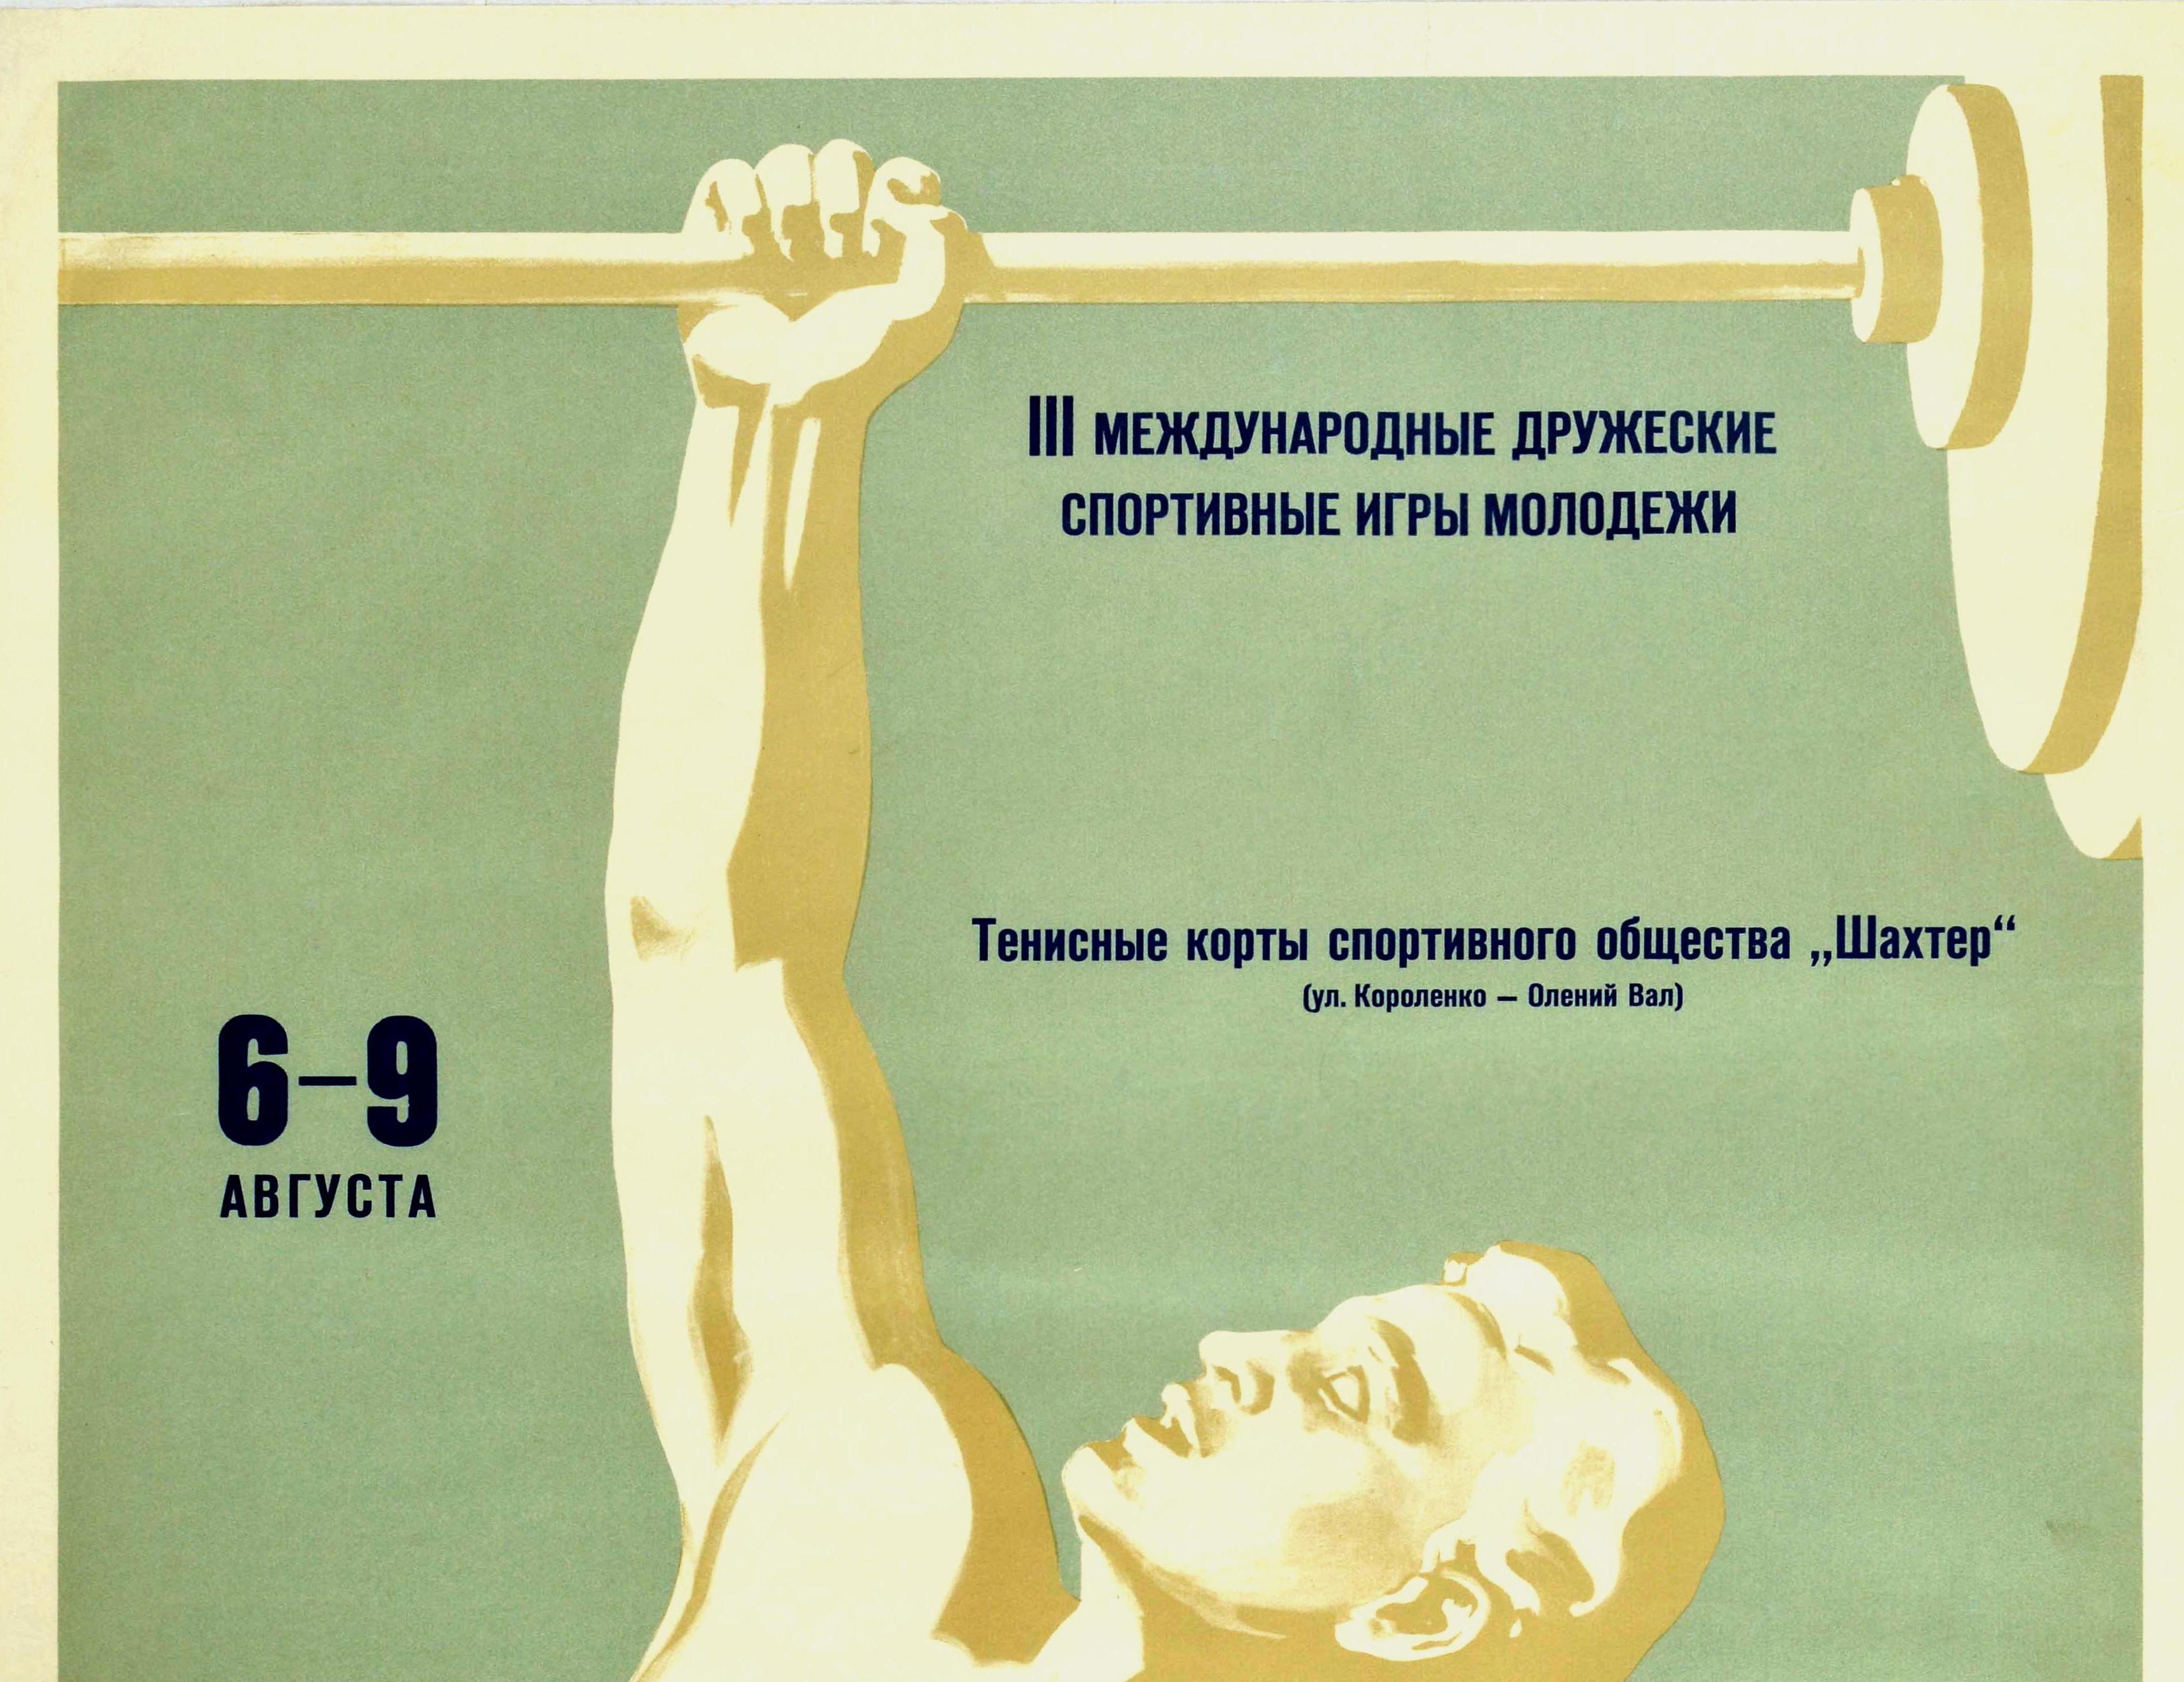 Original-Sportplakat für einen Gewichtheber-Wettbewerb bei den III. Internationalen Freundschaftsspielen der Moskauer Jugend, die vom 6. bis 9. August 1957 auf den Tennisplätzen der Shakhter / Miner Sports Society in der Korolenko Ulitsa / Street